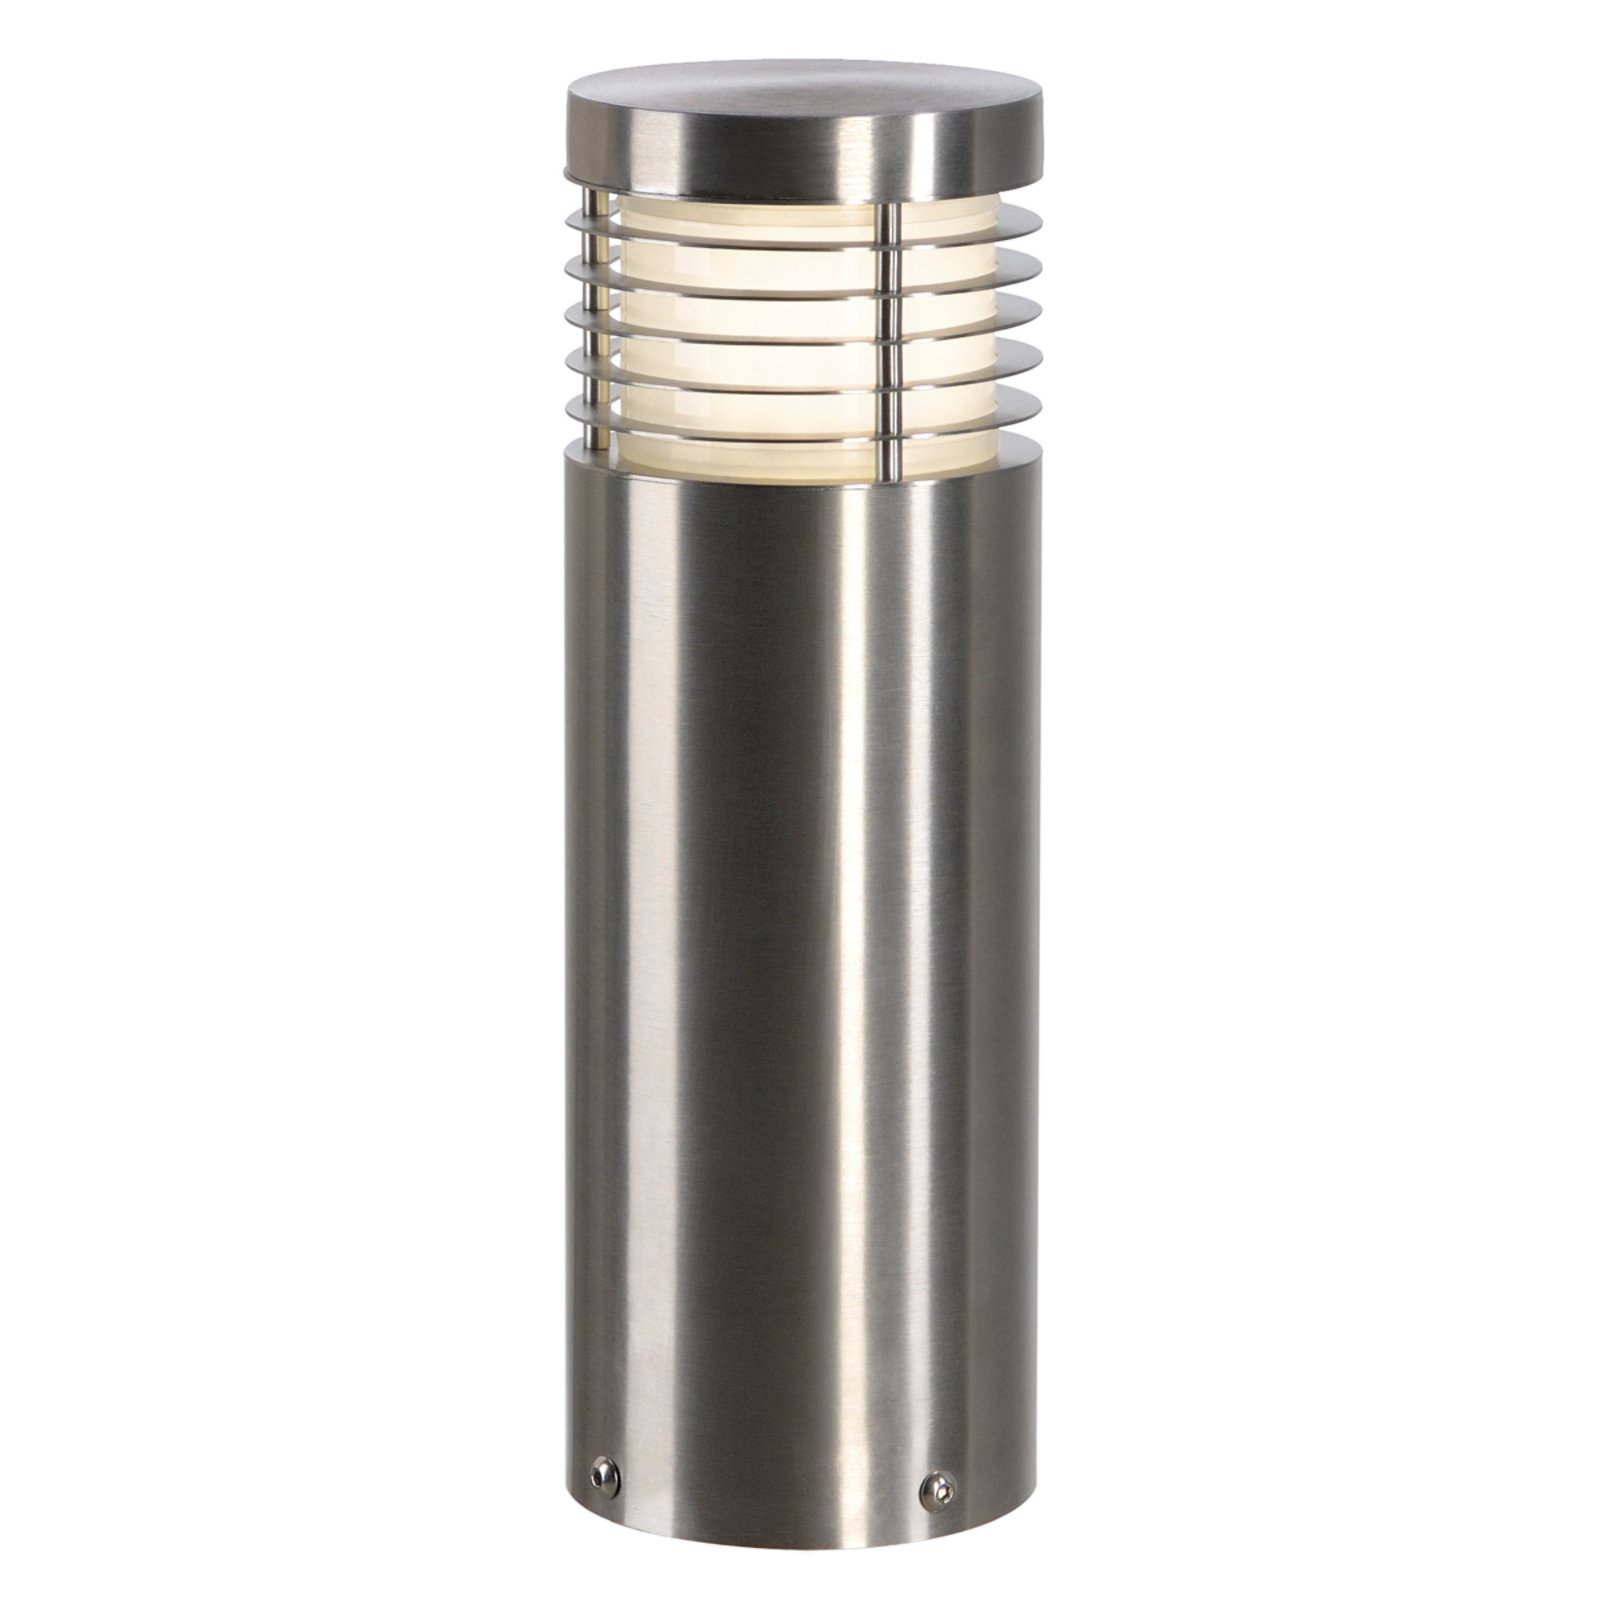 SLV Vap Slim 30 stainless steel pillar light